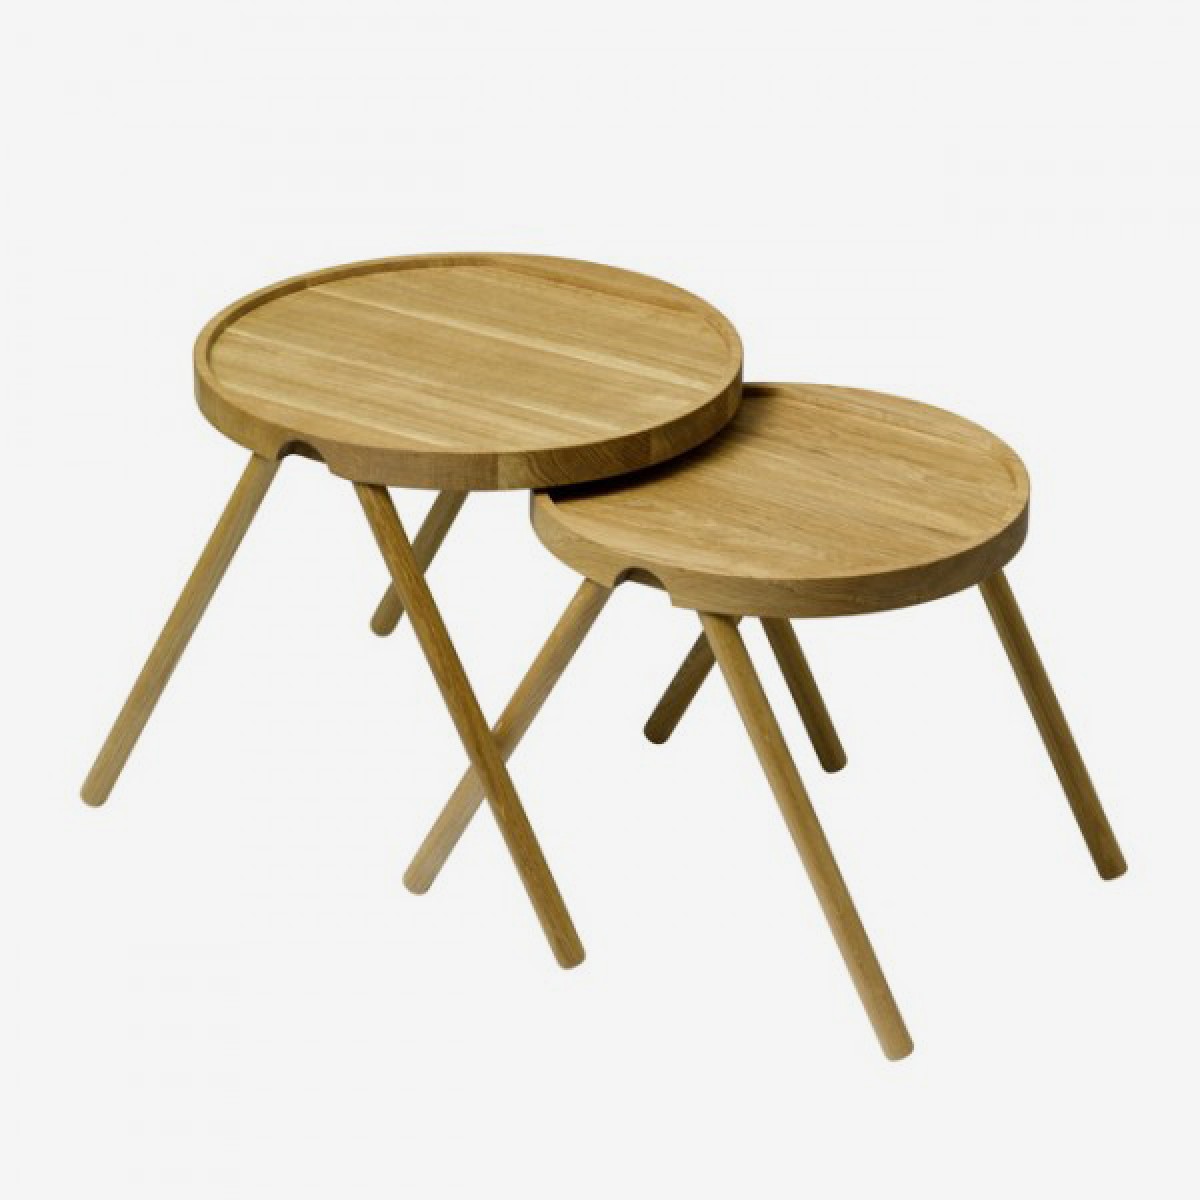 AUERBERG Tablett-Tisch, klein (Design: Tobias Grau)